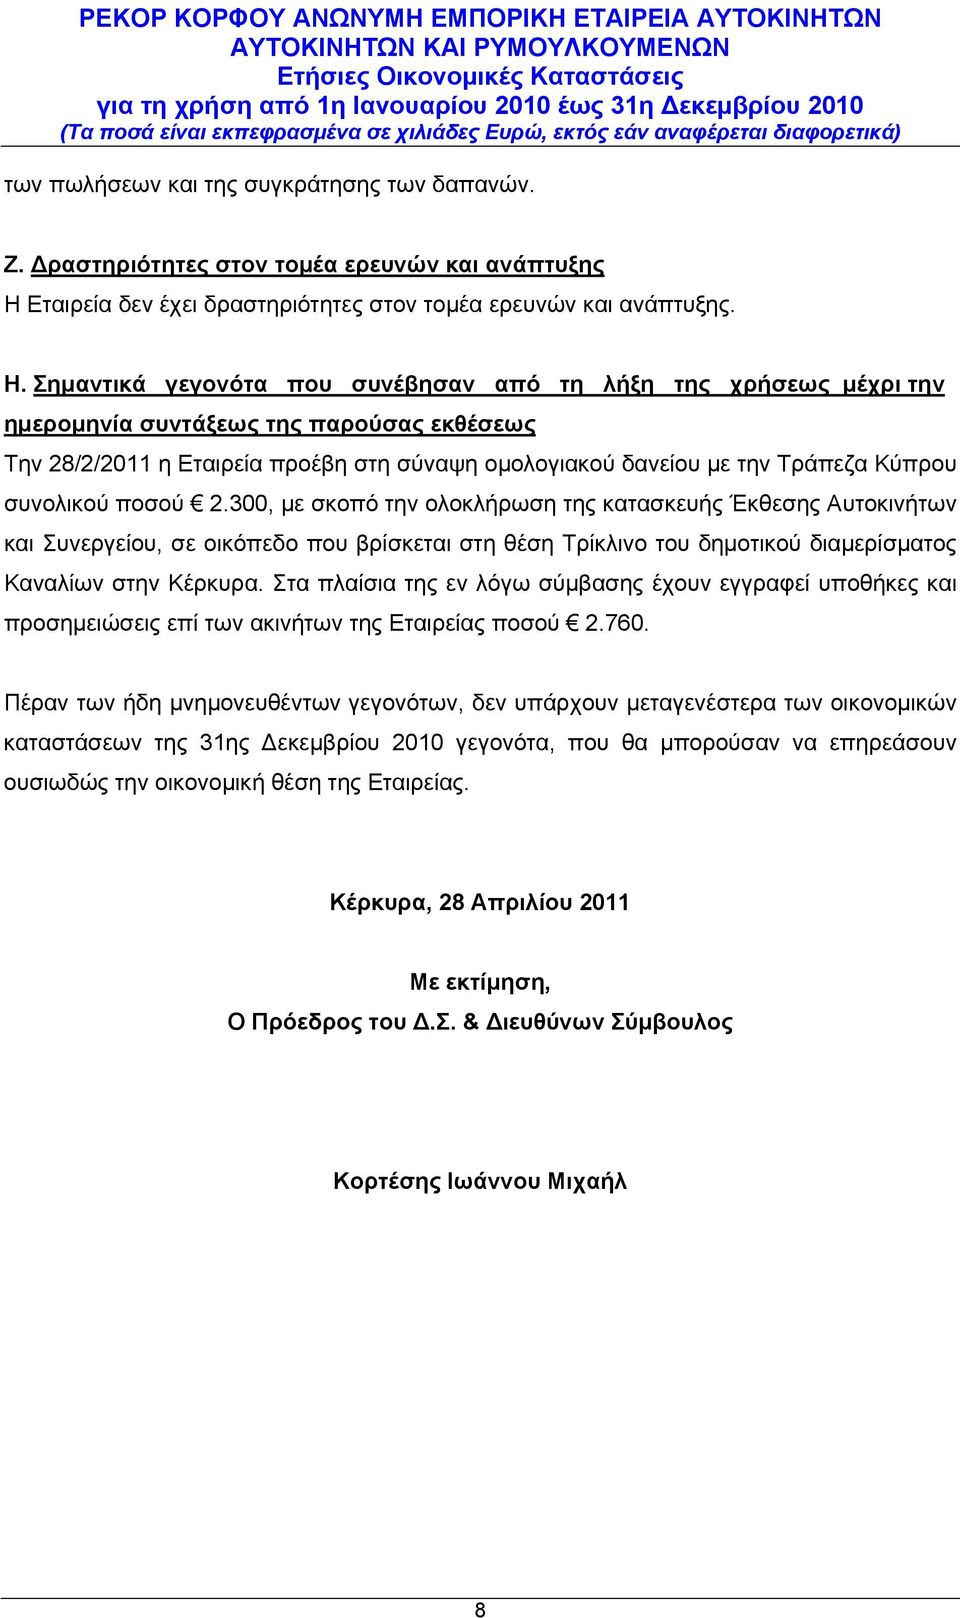 Σημαντικά γεγονότα που συνέβησαν από τη λήξη της χρήσεως μέχρι την ημερομηνία συντάξεως της παρούσας εκθέσεως Την 28/2/2011 η Εταιρεία προέβη στη σύναψη ομολογιακού δανείου με την Τράπεζα Κύπρου